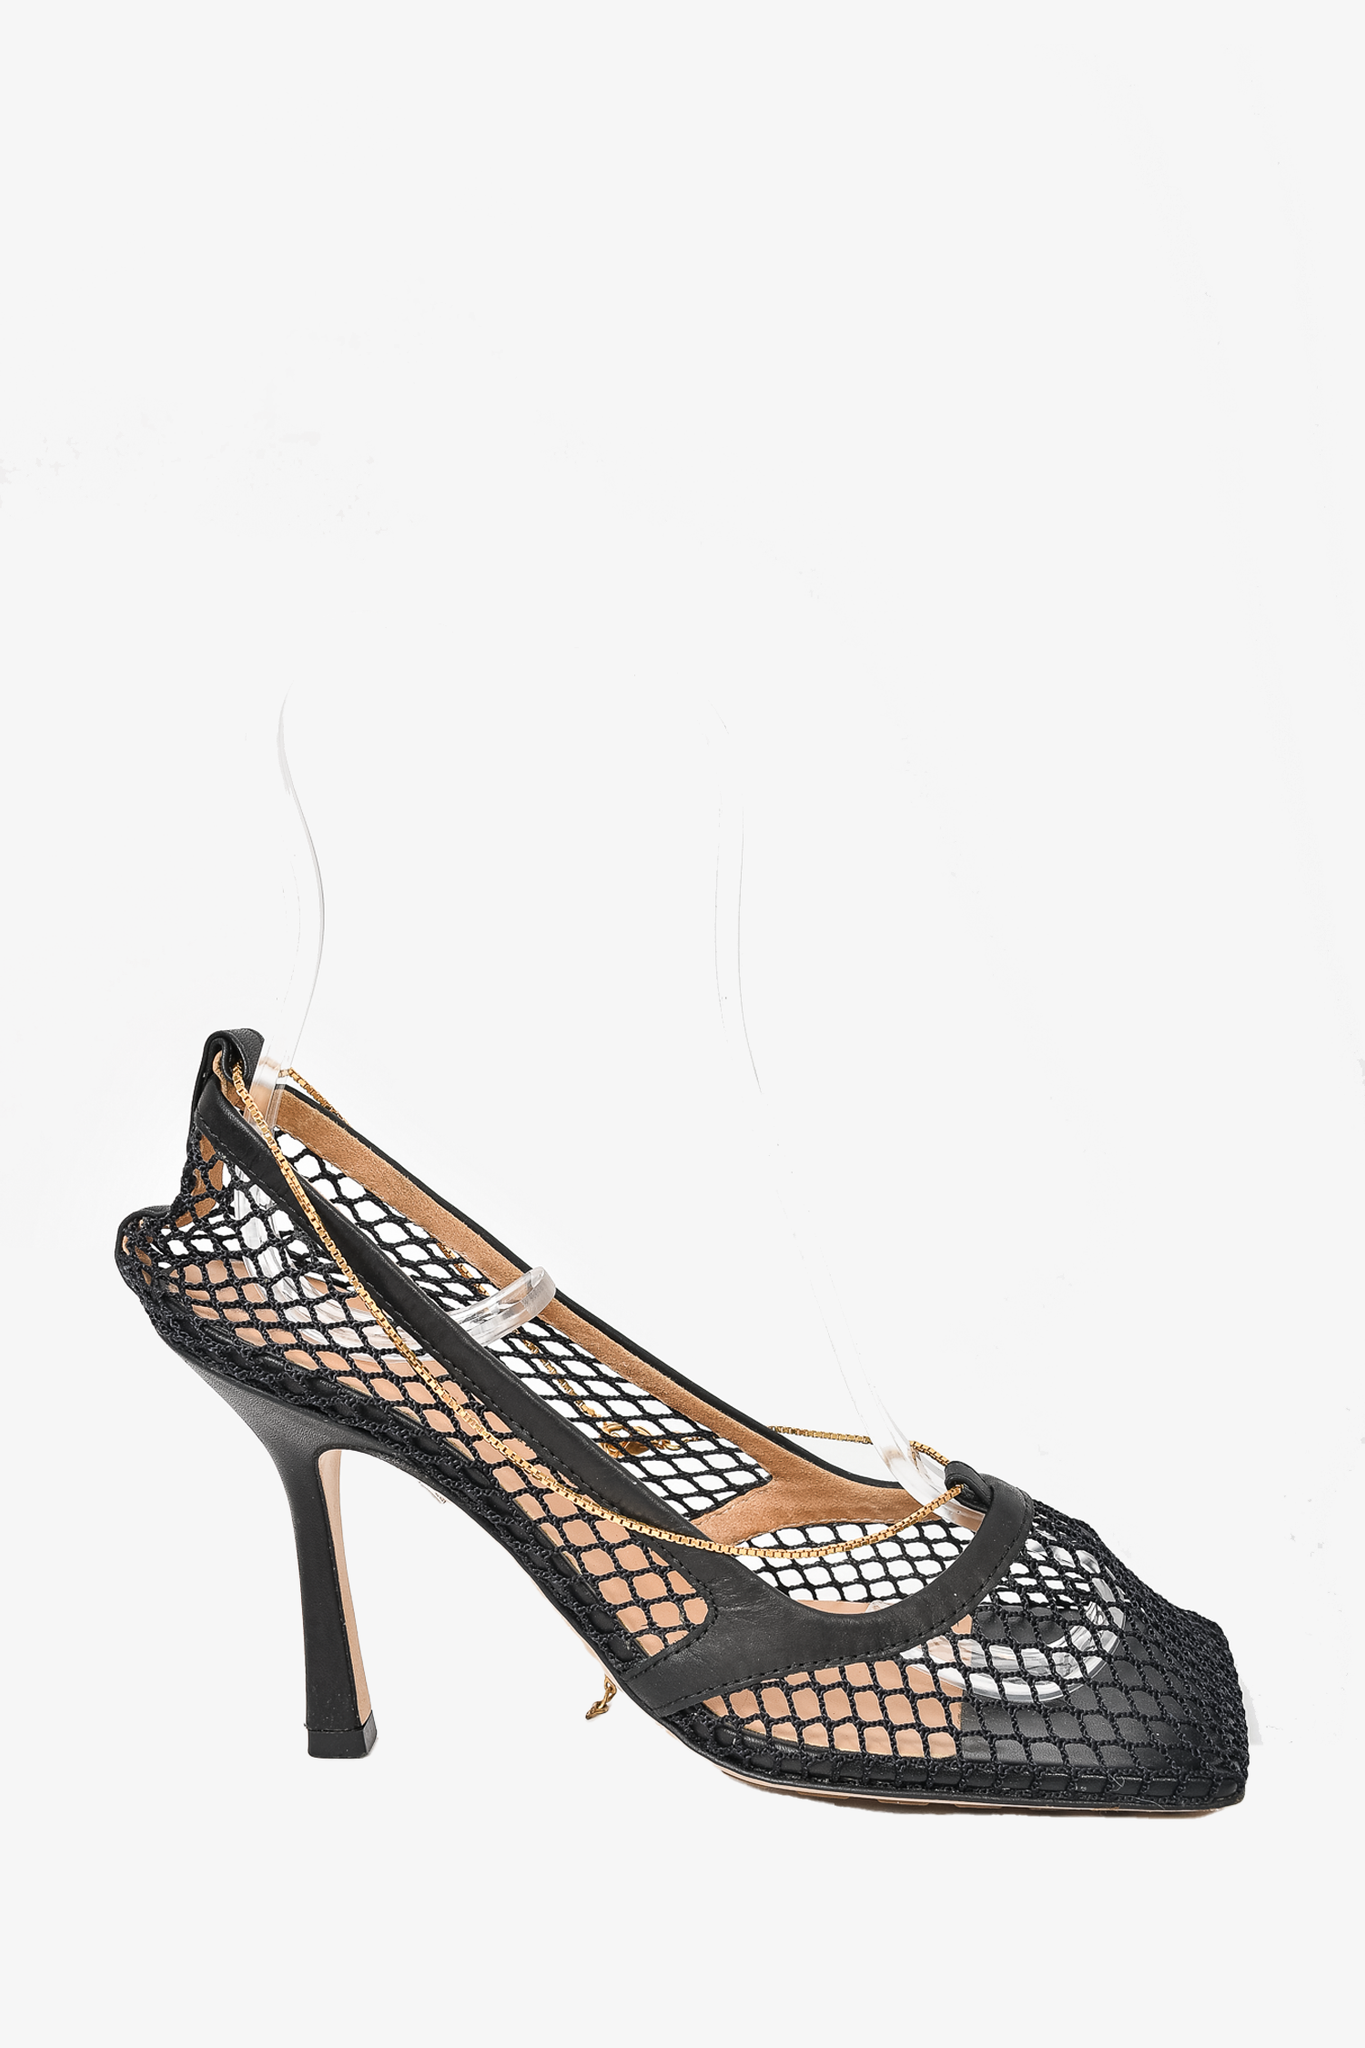 Bottega Veneta Black Net 'Stretch' Strappy Heels Size 36.5